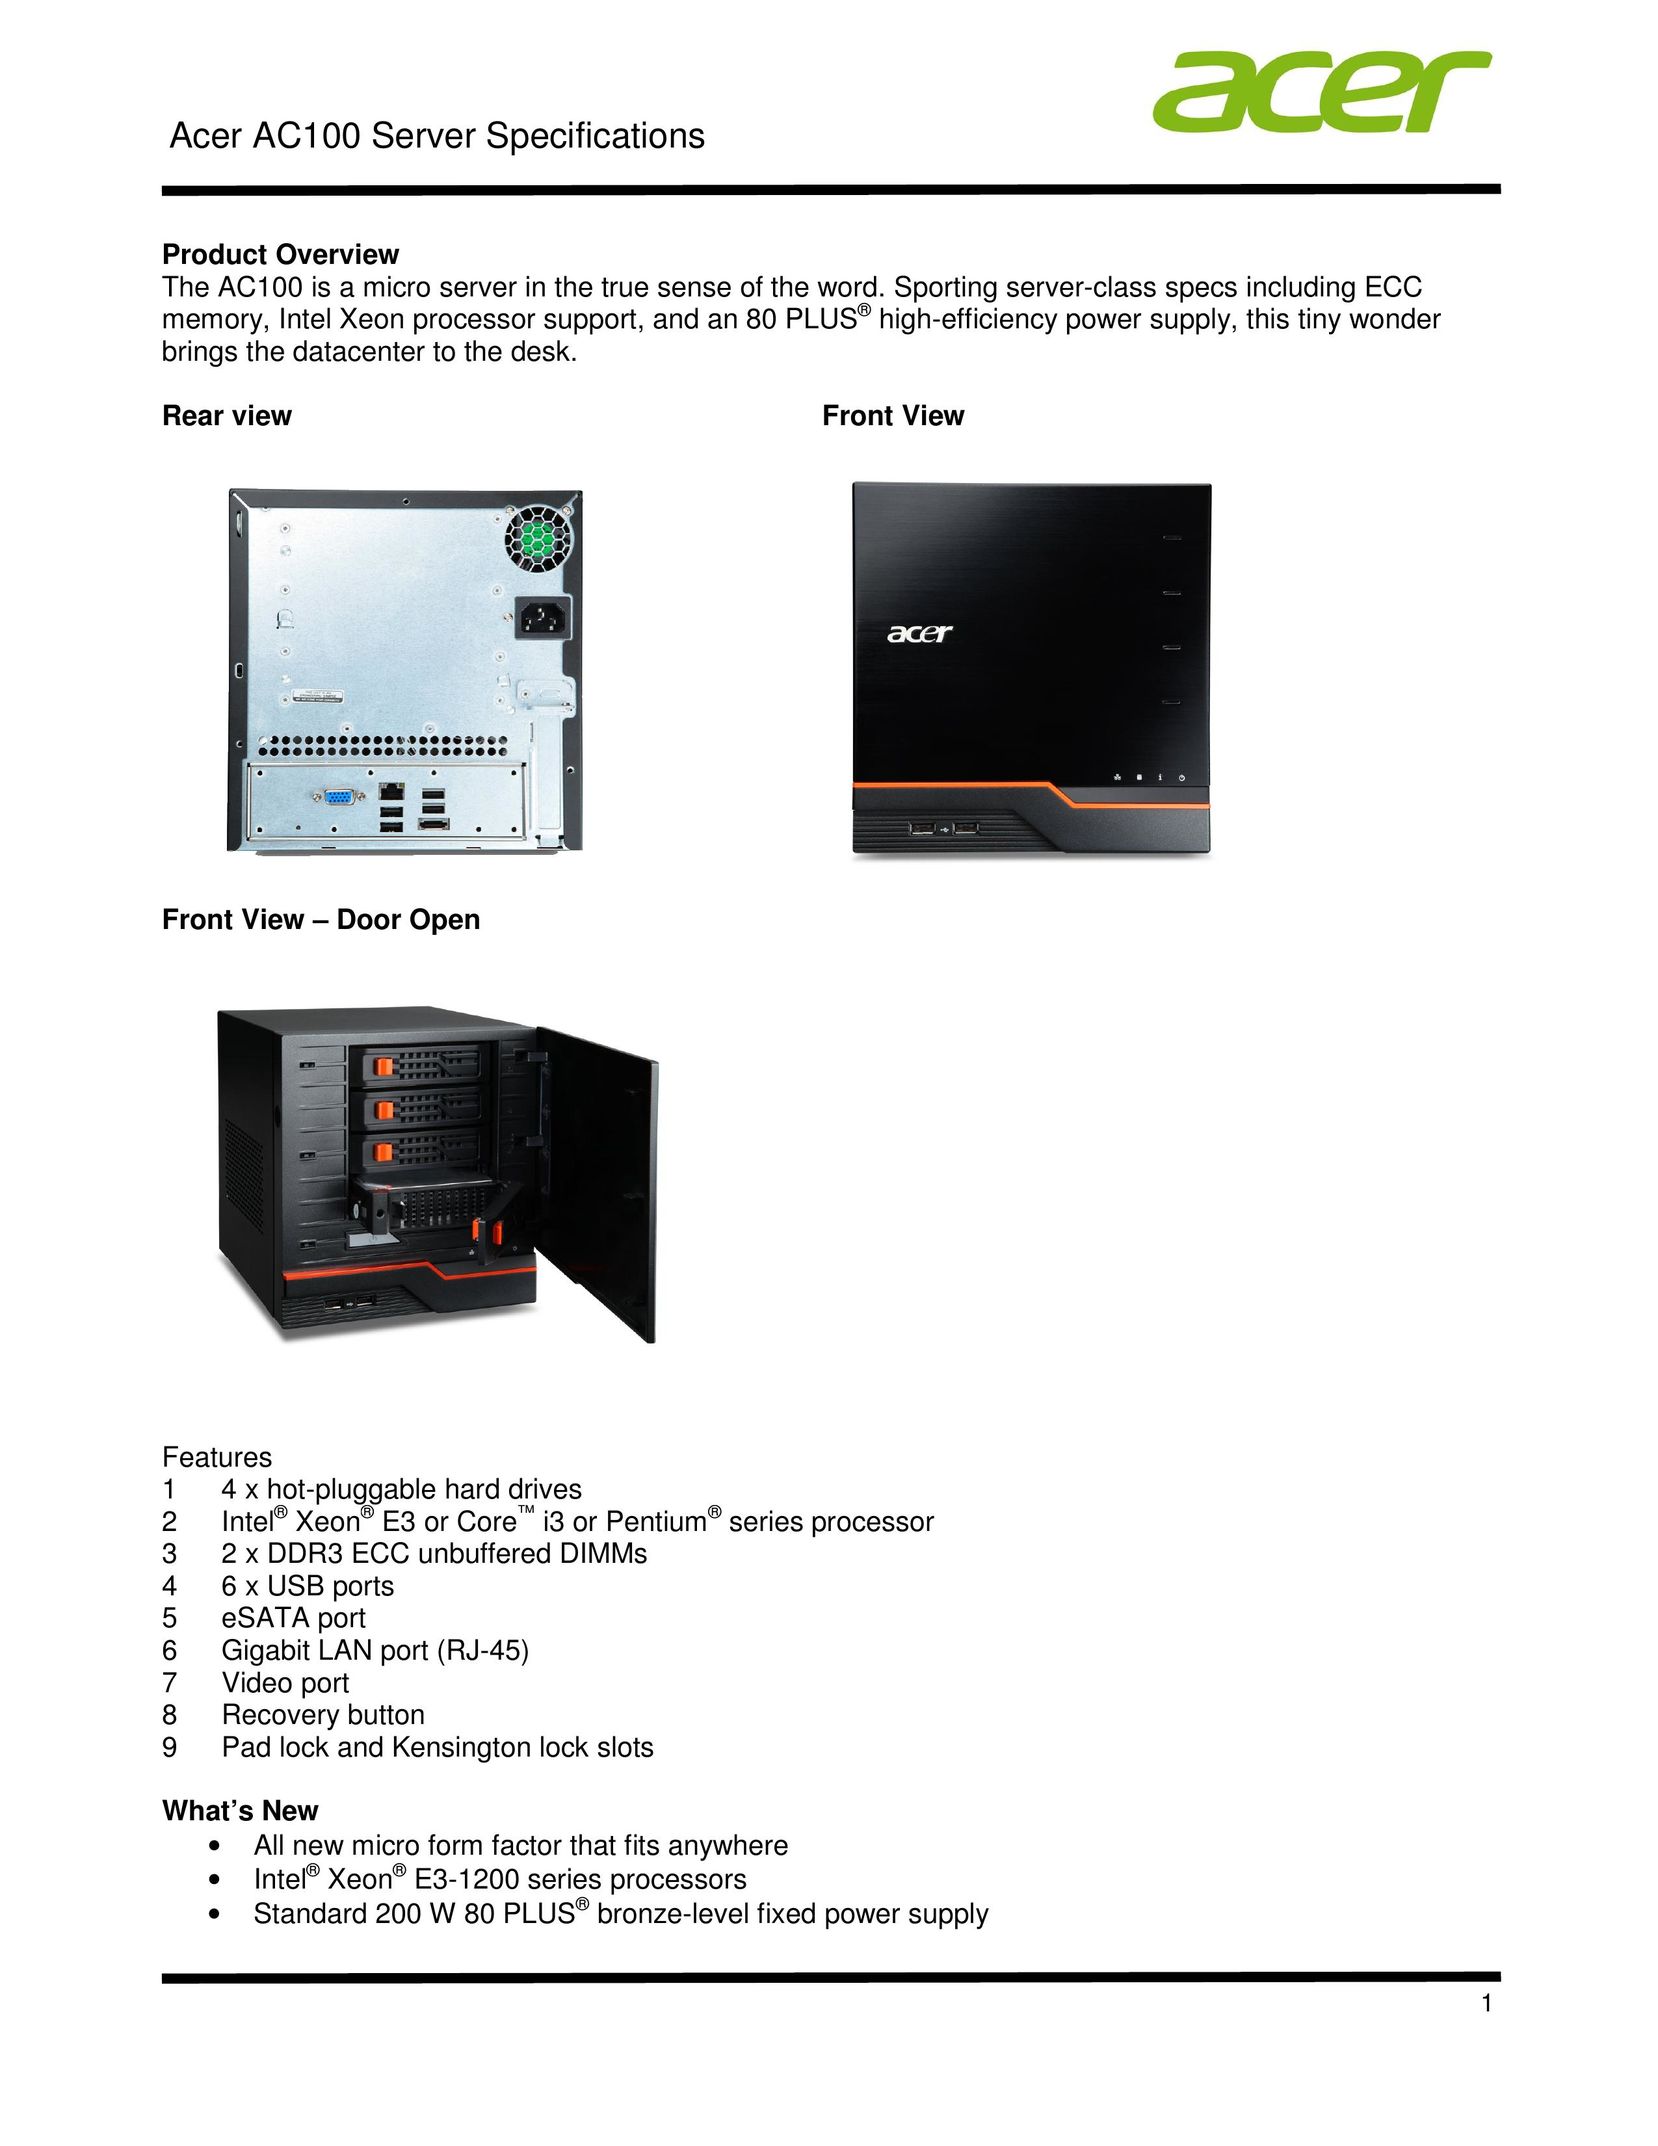 Acer STR7LAA001 Server User Manual